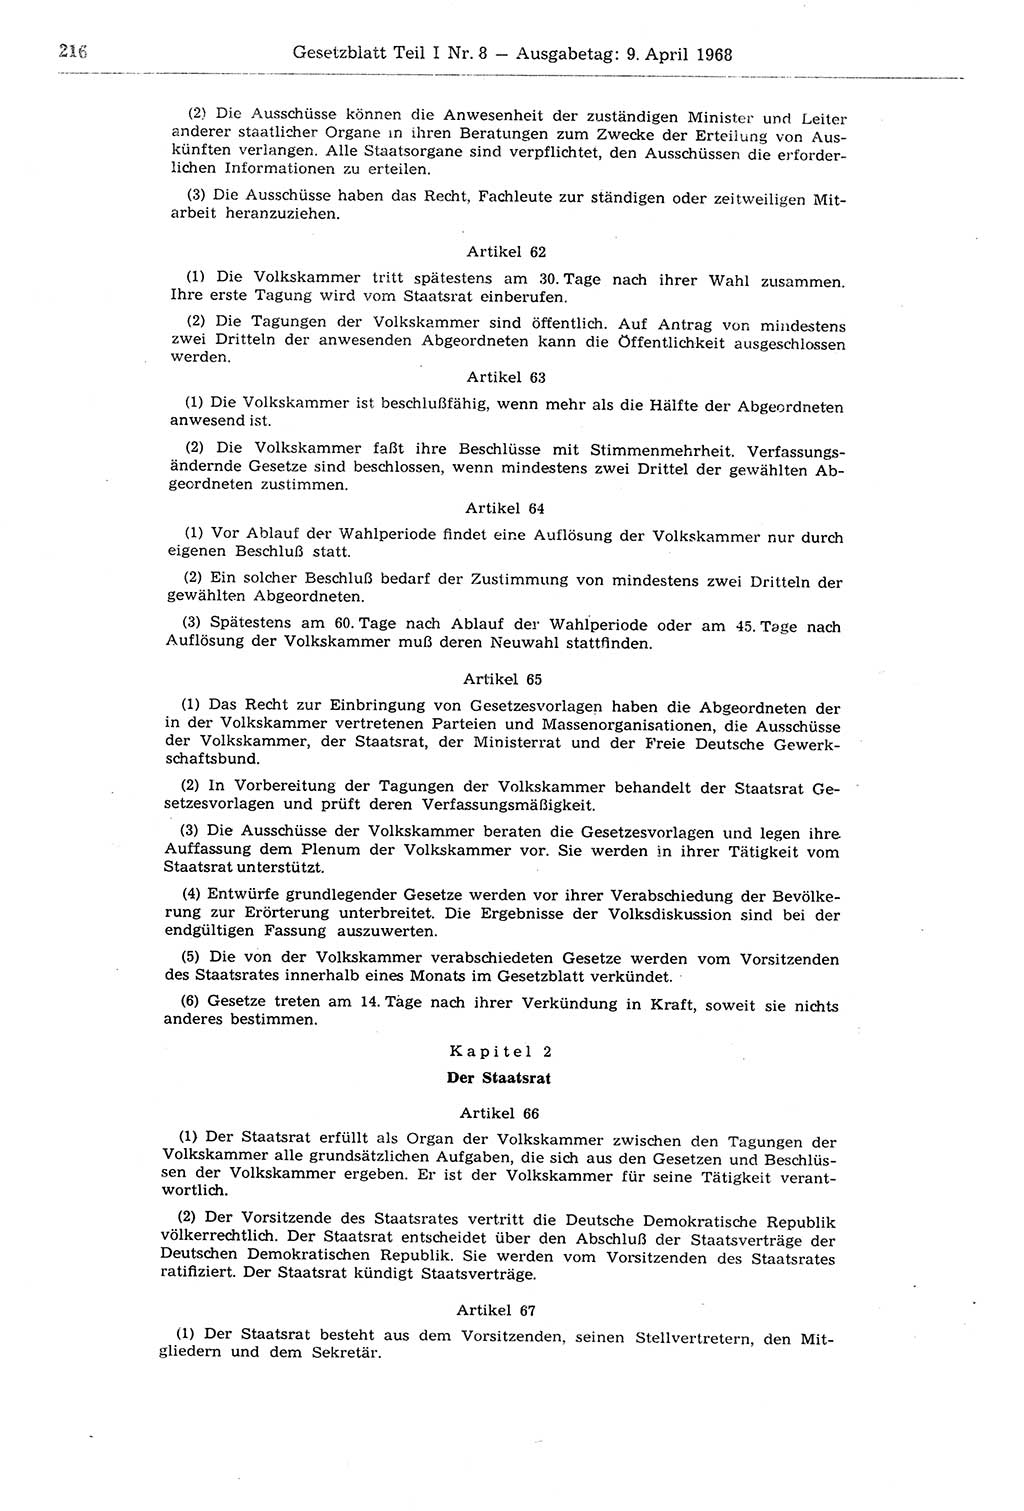 Gesetzblatt (GBl.) der Deutschen Demokratischen Republik (DDR) Teil Ⅰ 1968, Seite 216 (GBl. DDR Ⅰ 1968, S. 216)